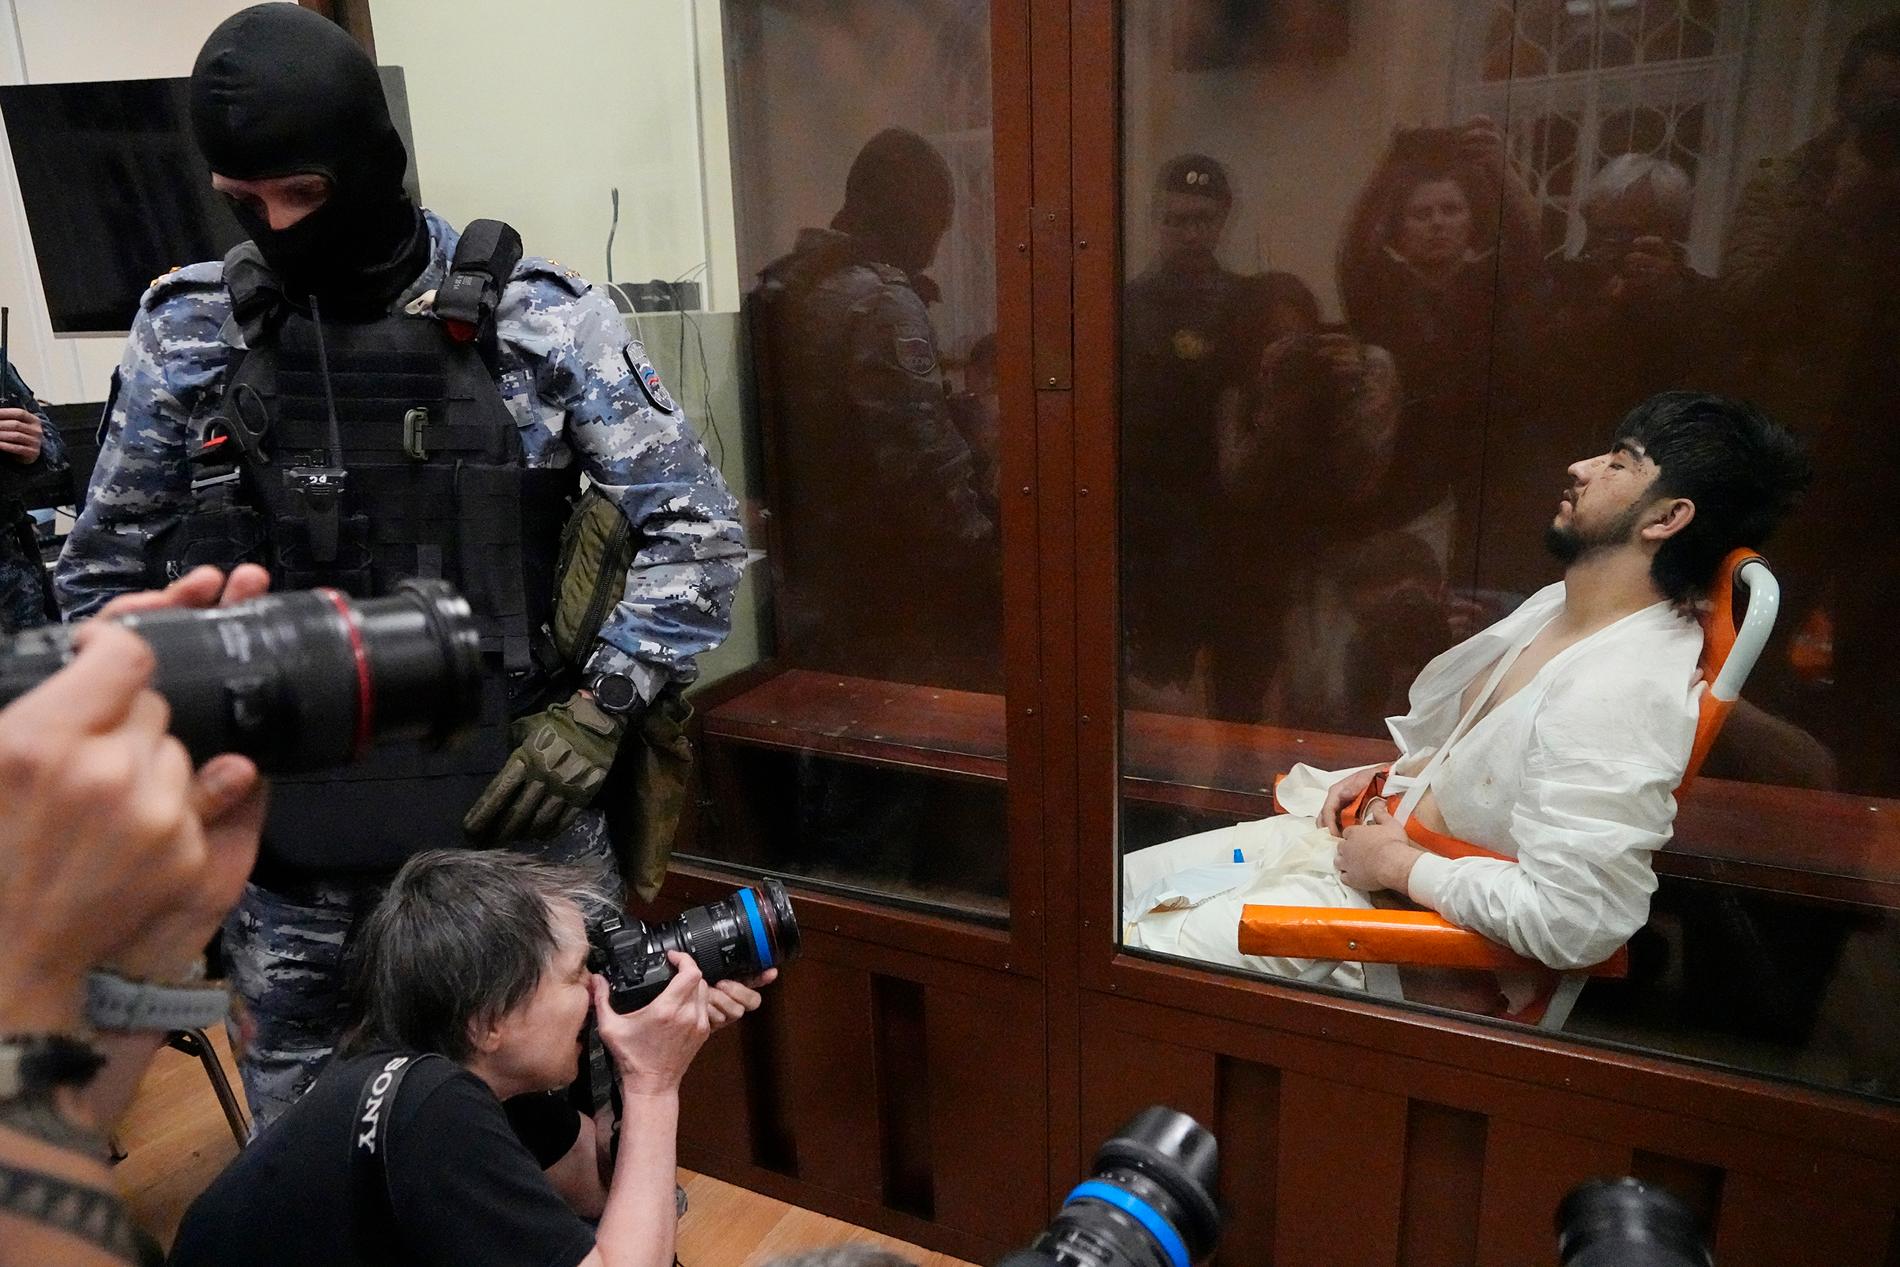 Den yngste av de fyra misstänkta terroristerna, 19-årige Muchammadsobir Fajzov, rullades in i domstolen efter att ha fått intensivvård.